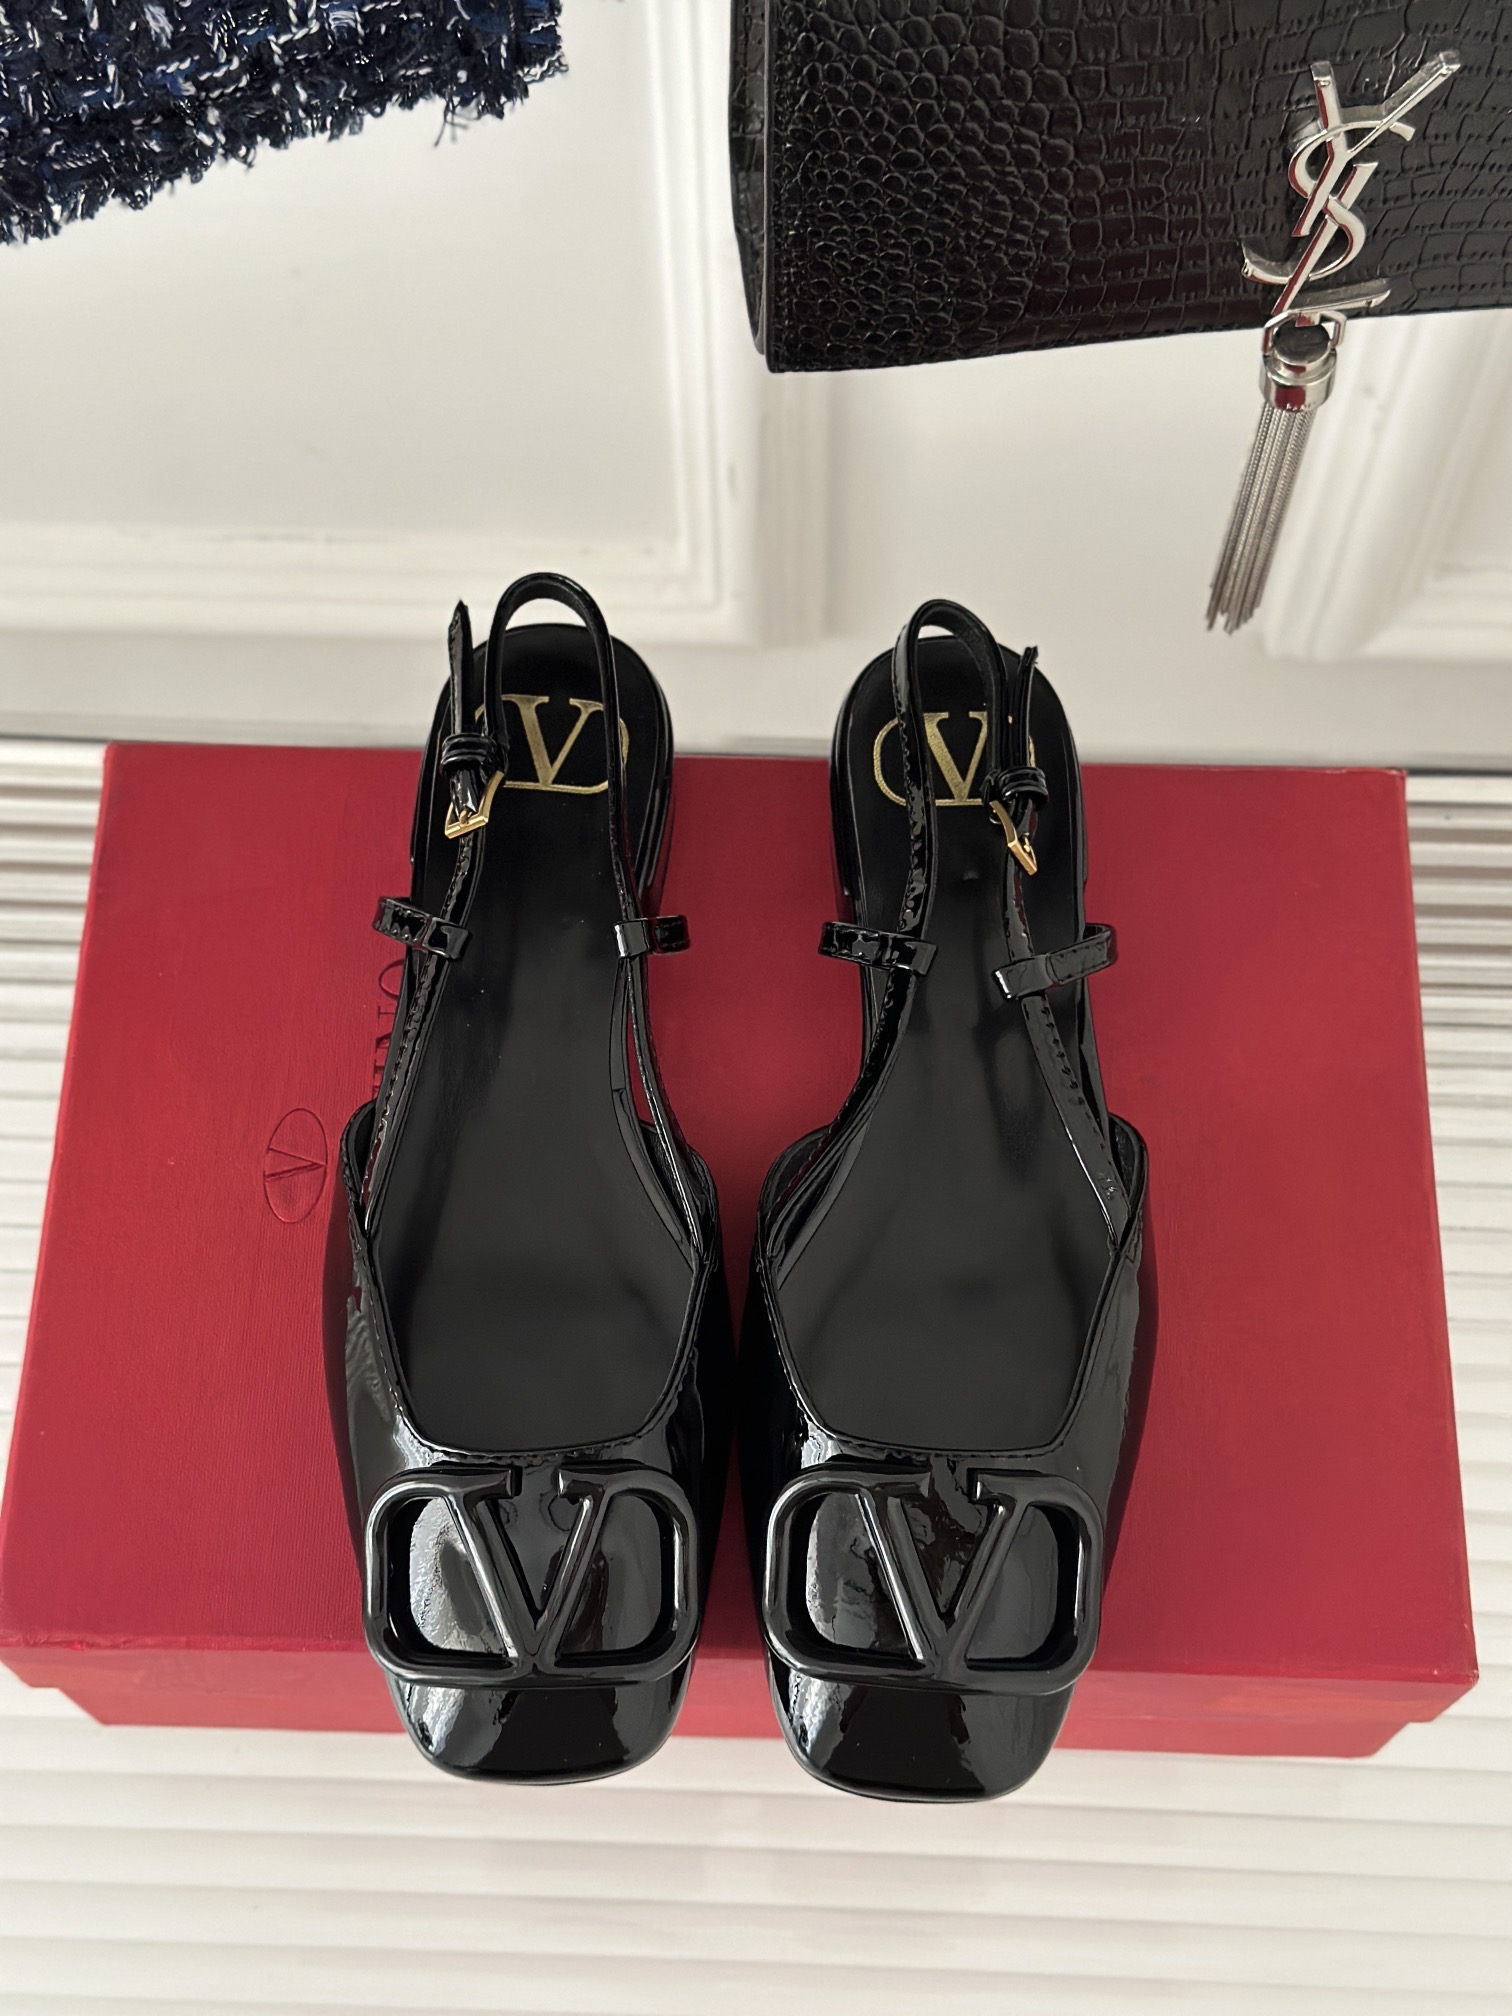 Valentin华伦天伦经典大V扣后空包头凉鞋️经典的大V扣元素设计搭配彰显了品牌独有的设计风格奢华时尚